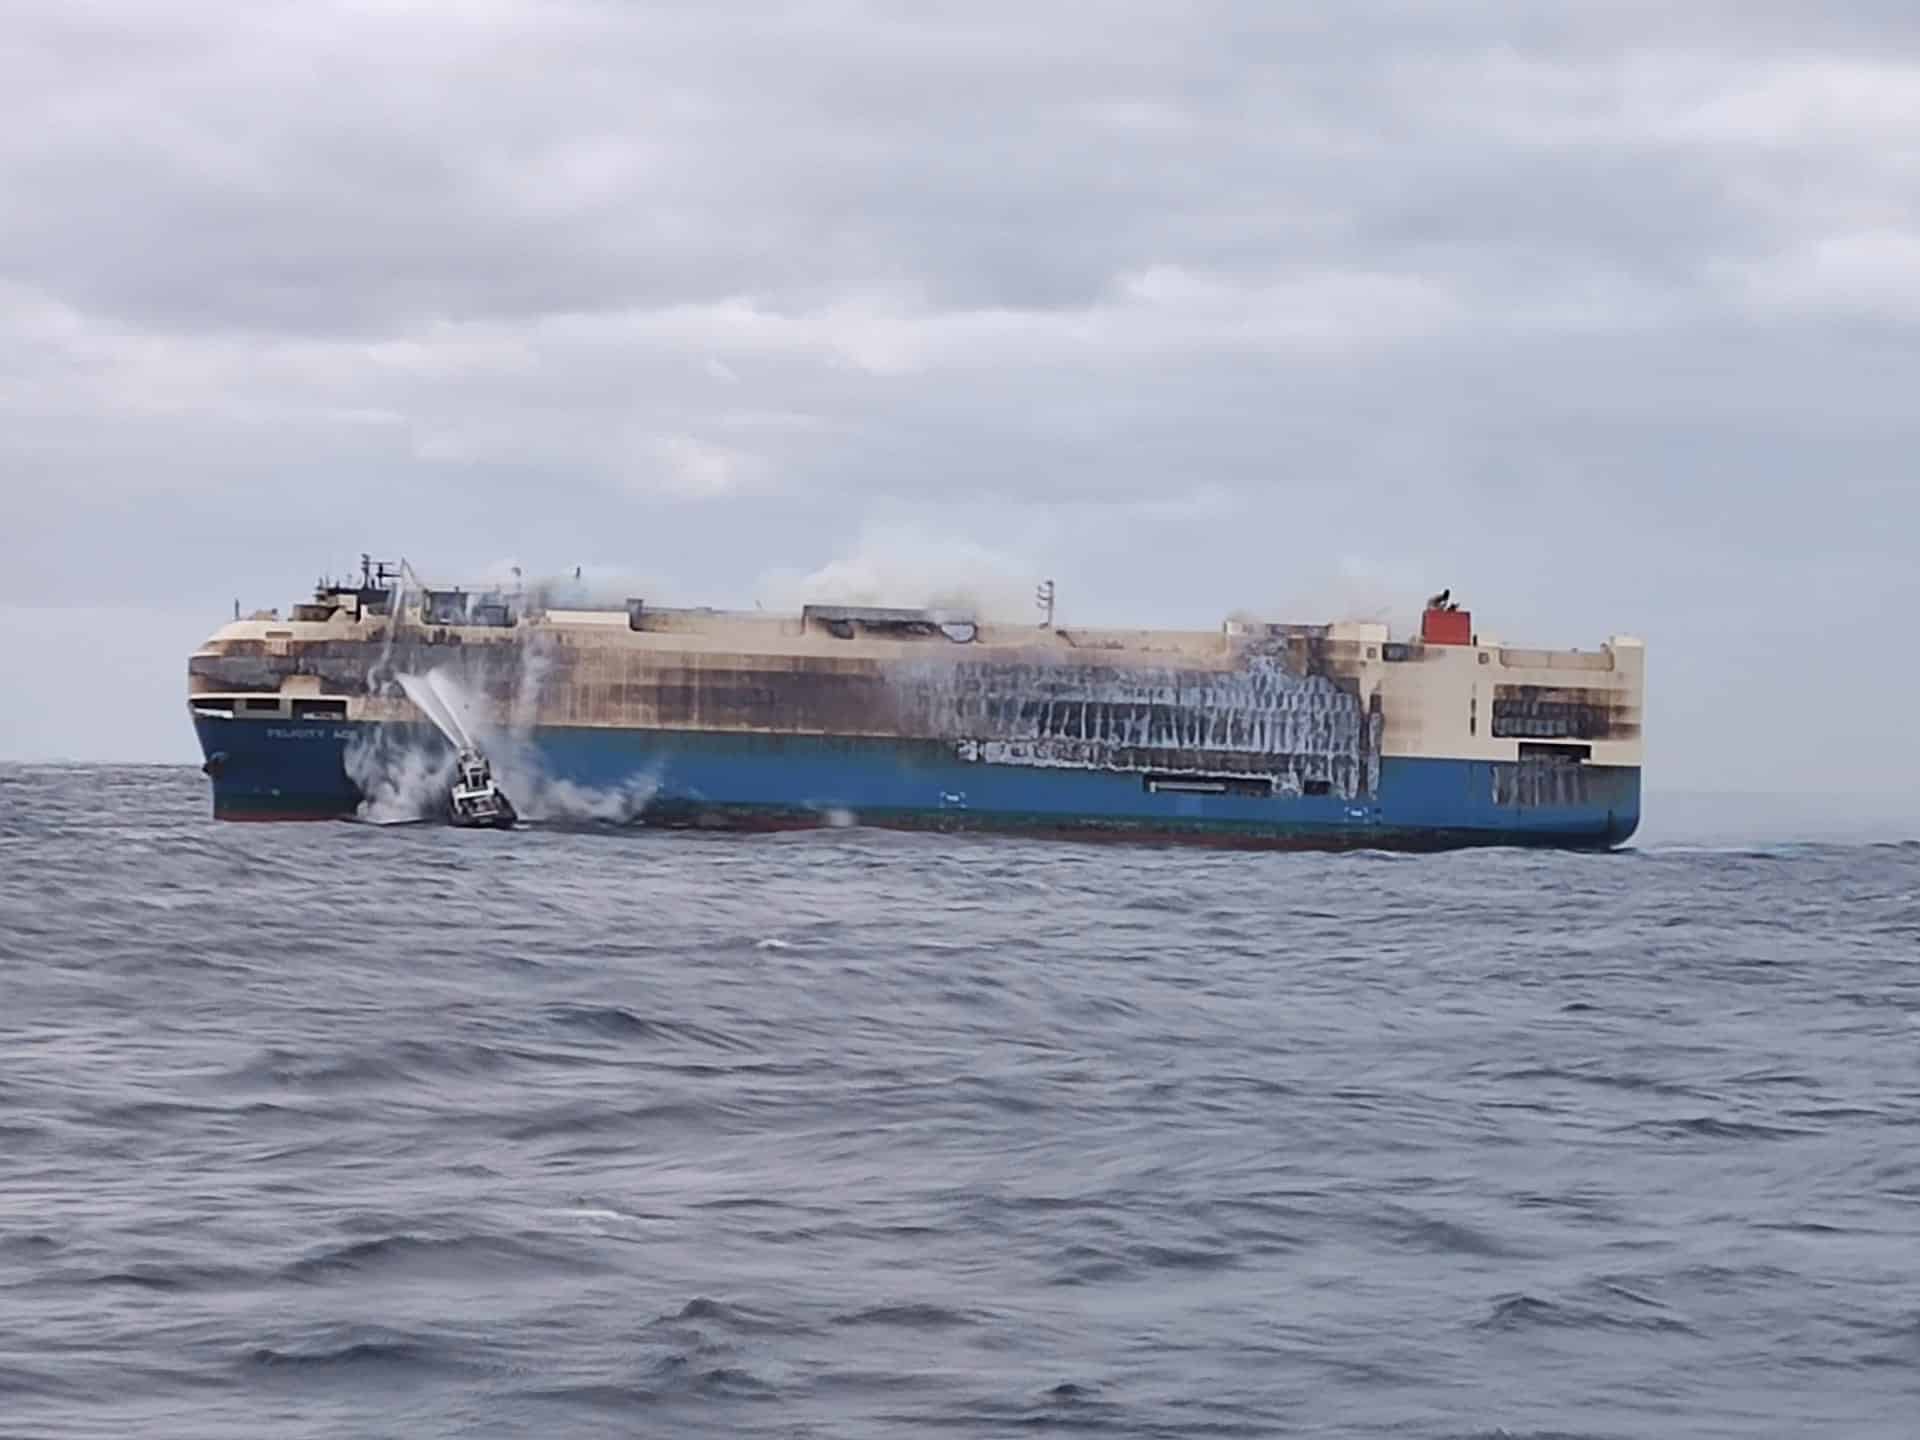 Operadora de navio que incendiou em alto mar proíbe carros elétricos